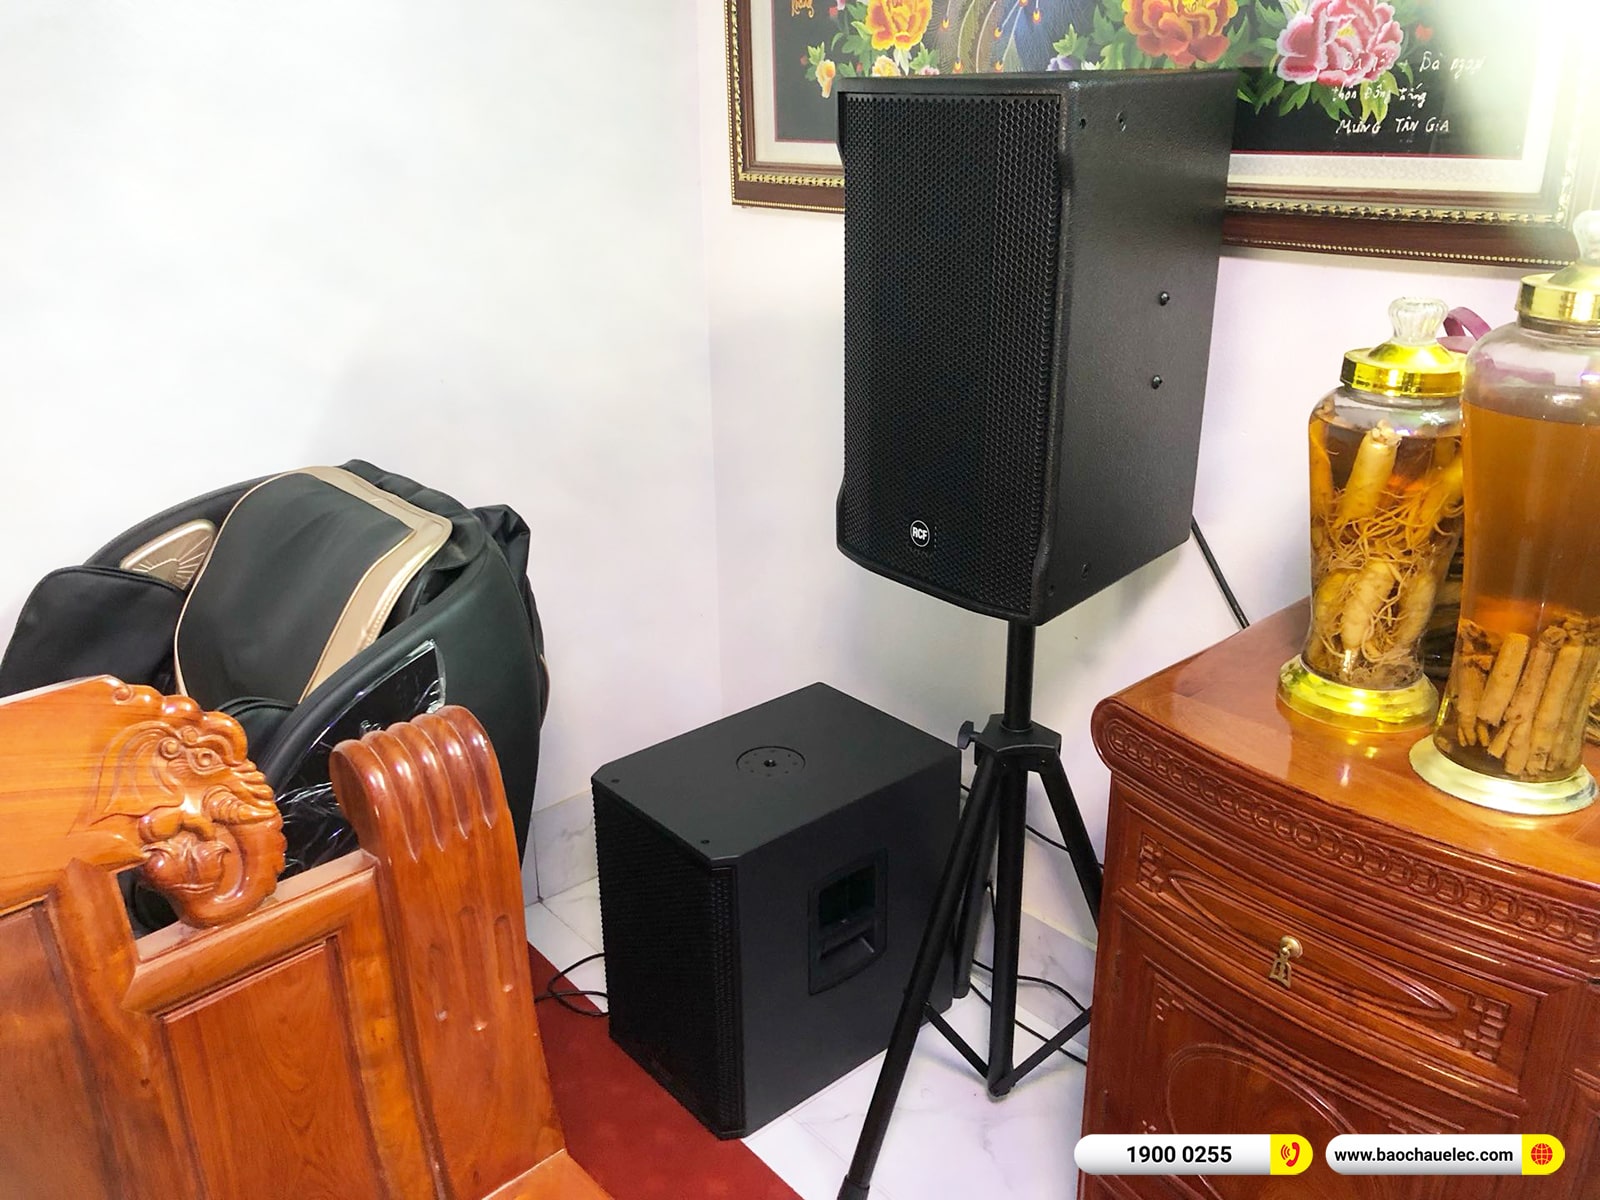 Lắp đặt dàn karaoke RCF hơn 131tr cho chú Điệp tại Bắc Giang (RCF CMAX 4112, Xli3500, KX180A, 702AS MK3, VM200, AAP P8) 